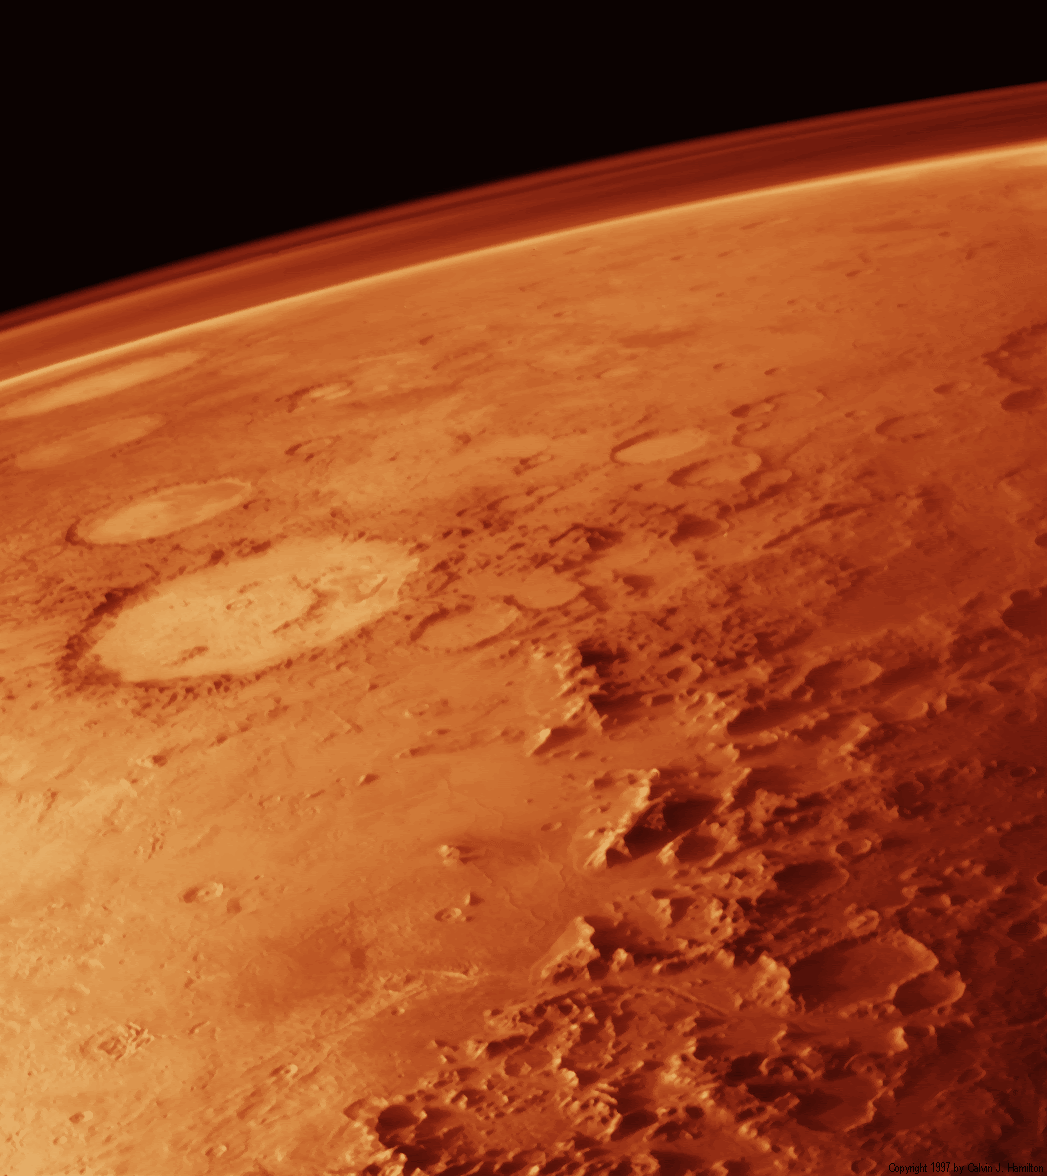 Mars atmosphere from orbit